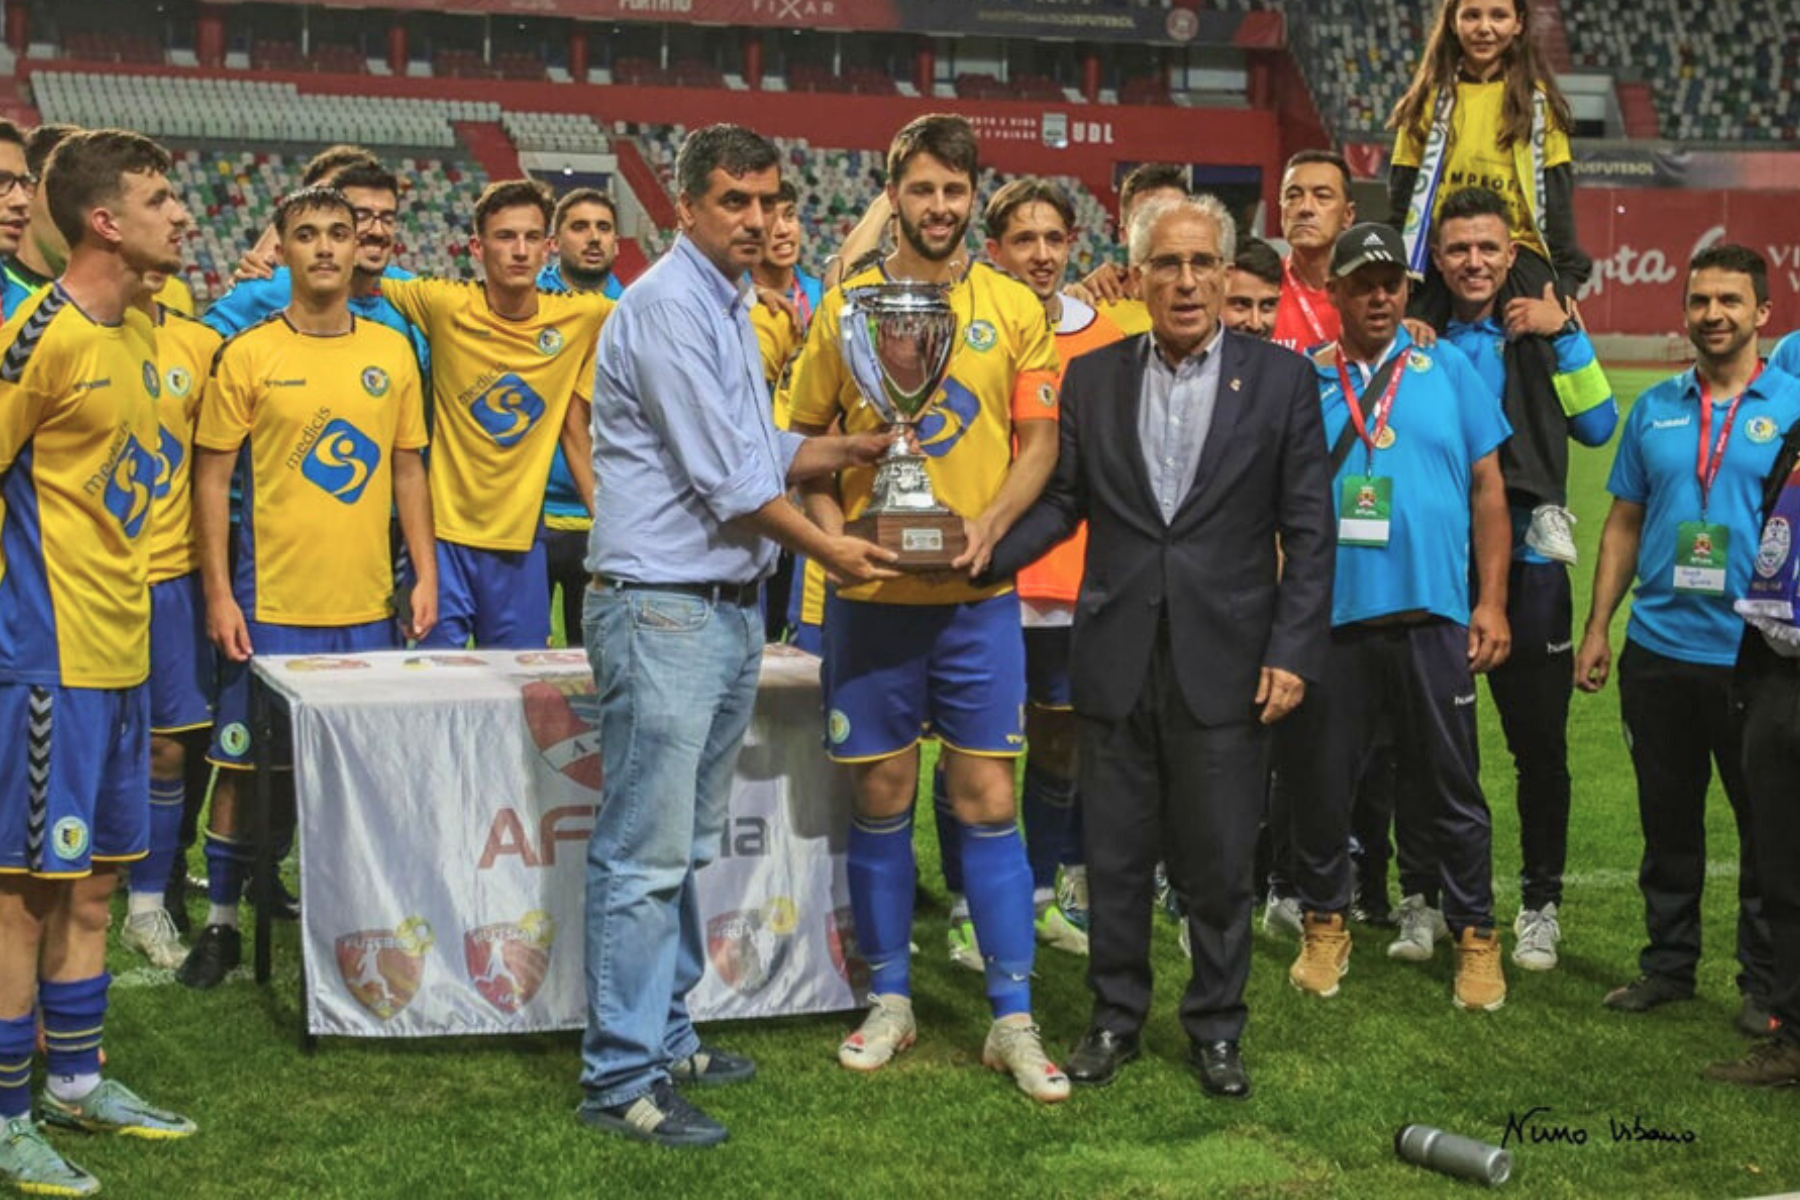 Grupo Alegre e Unido vence o Campeonato Distrital 1ª Divisão!